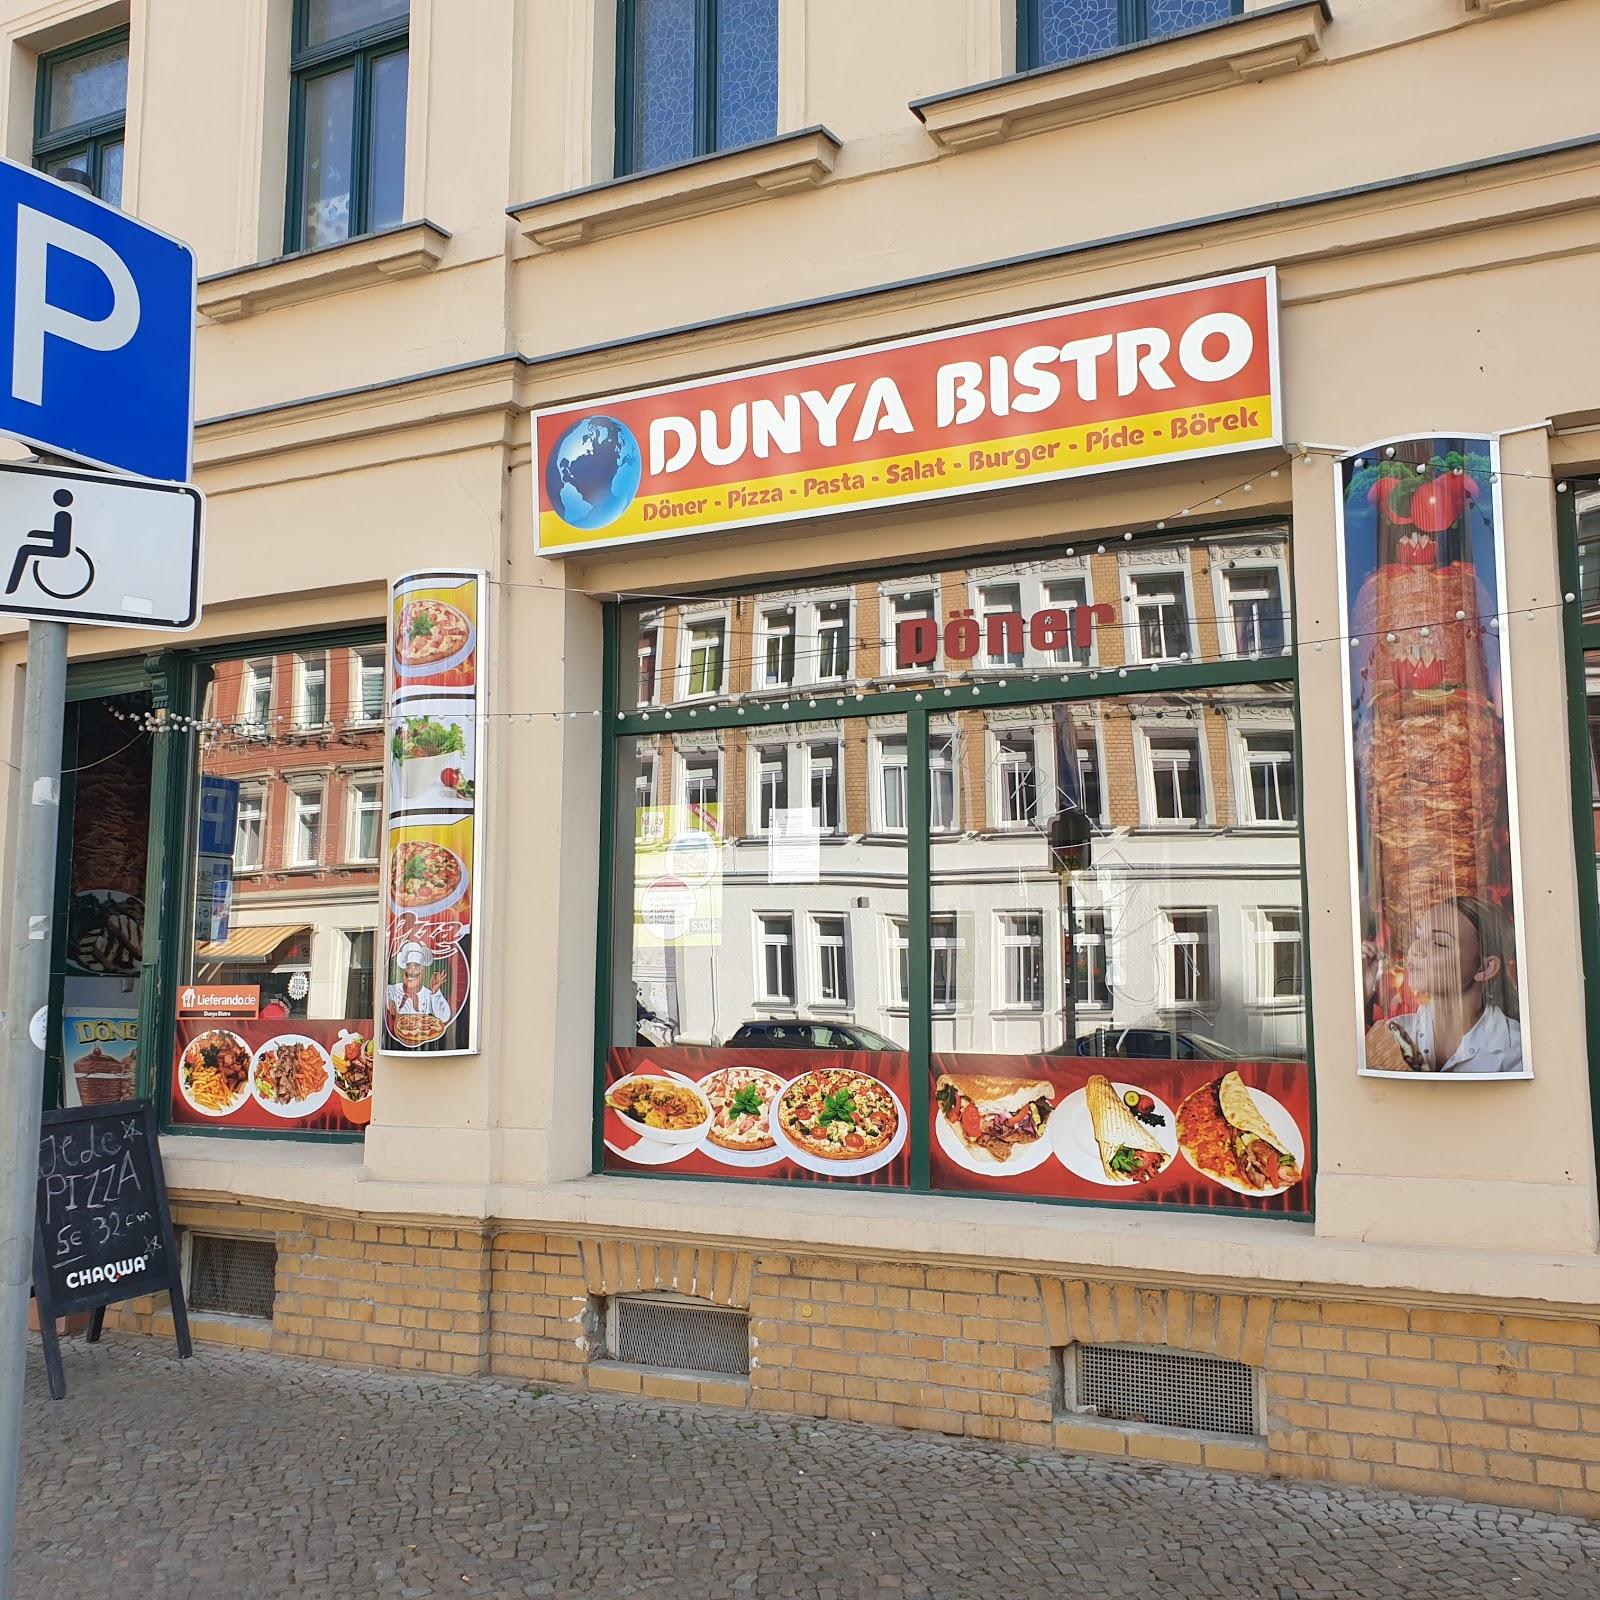 Restaurant "Dunya Bistro" in Leipzig